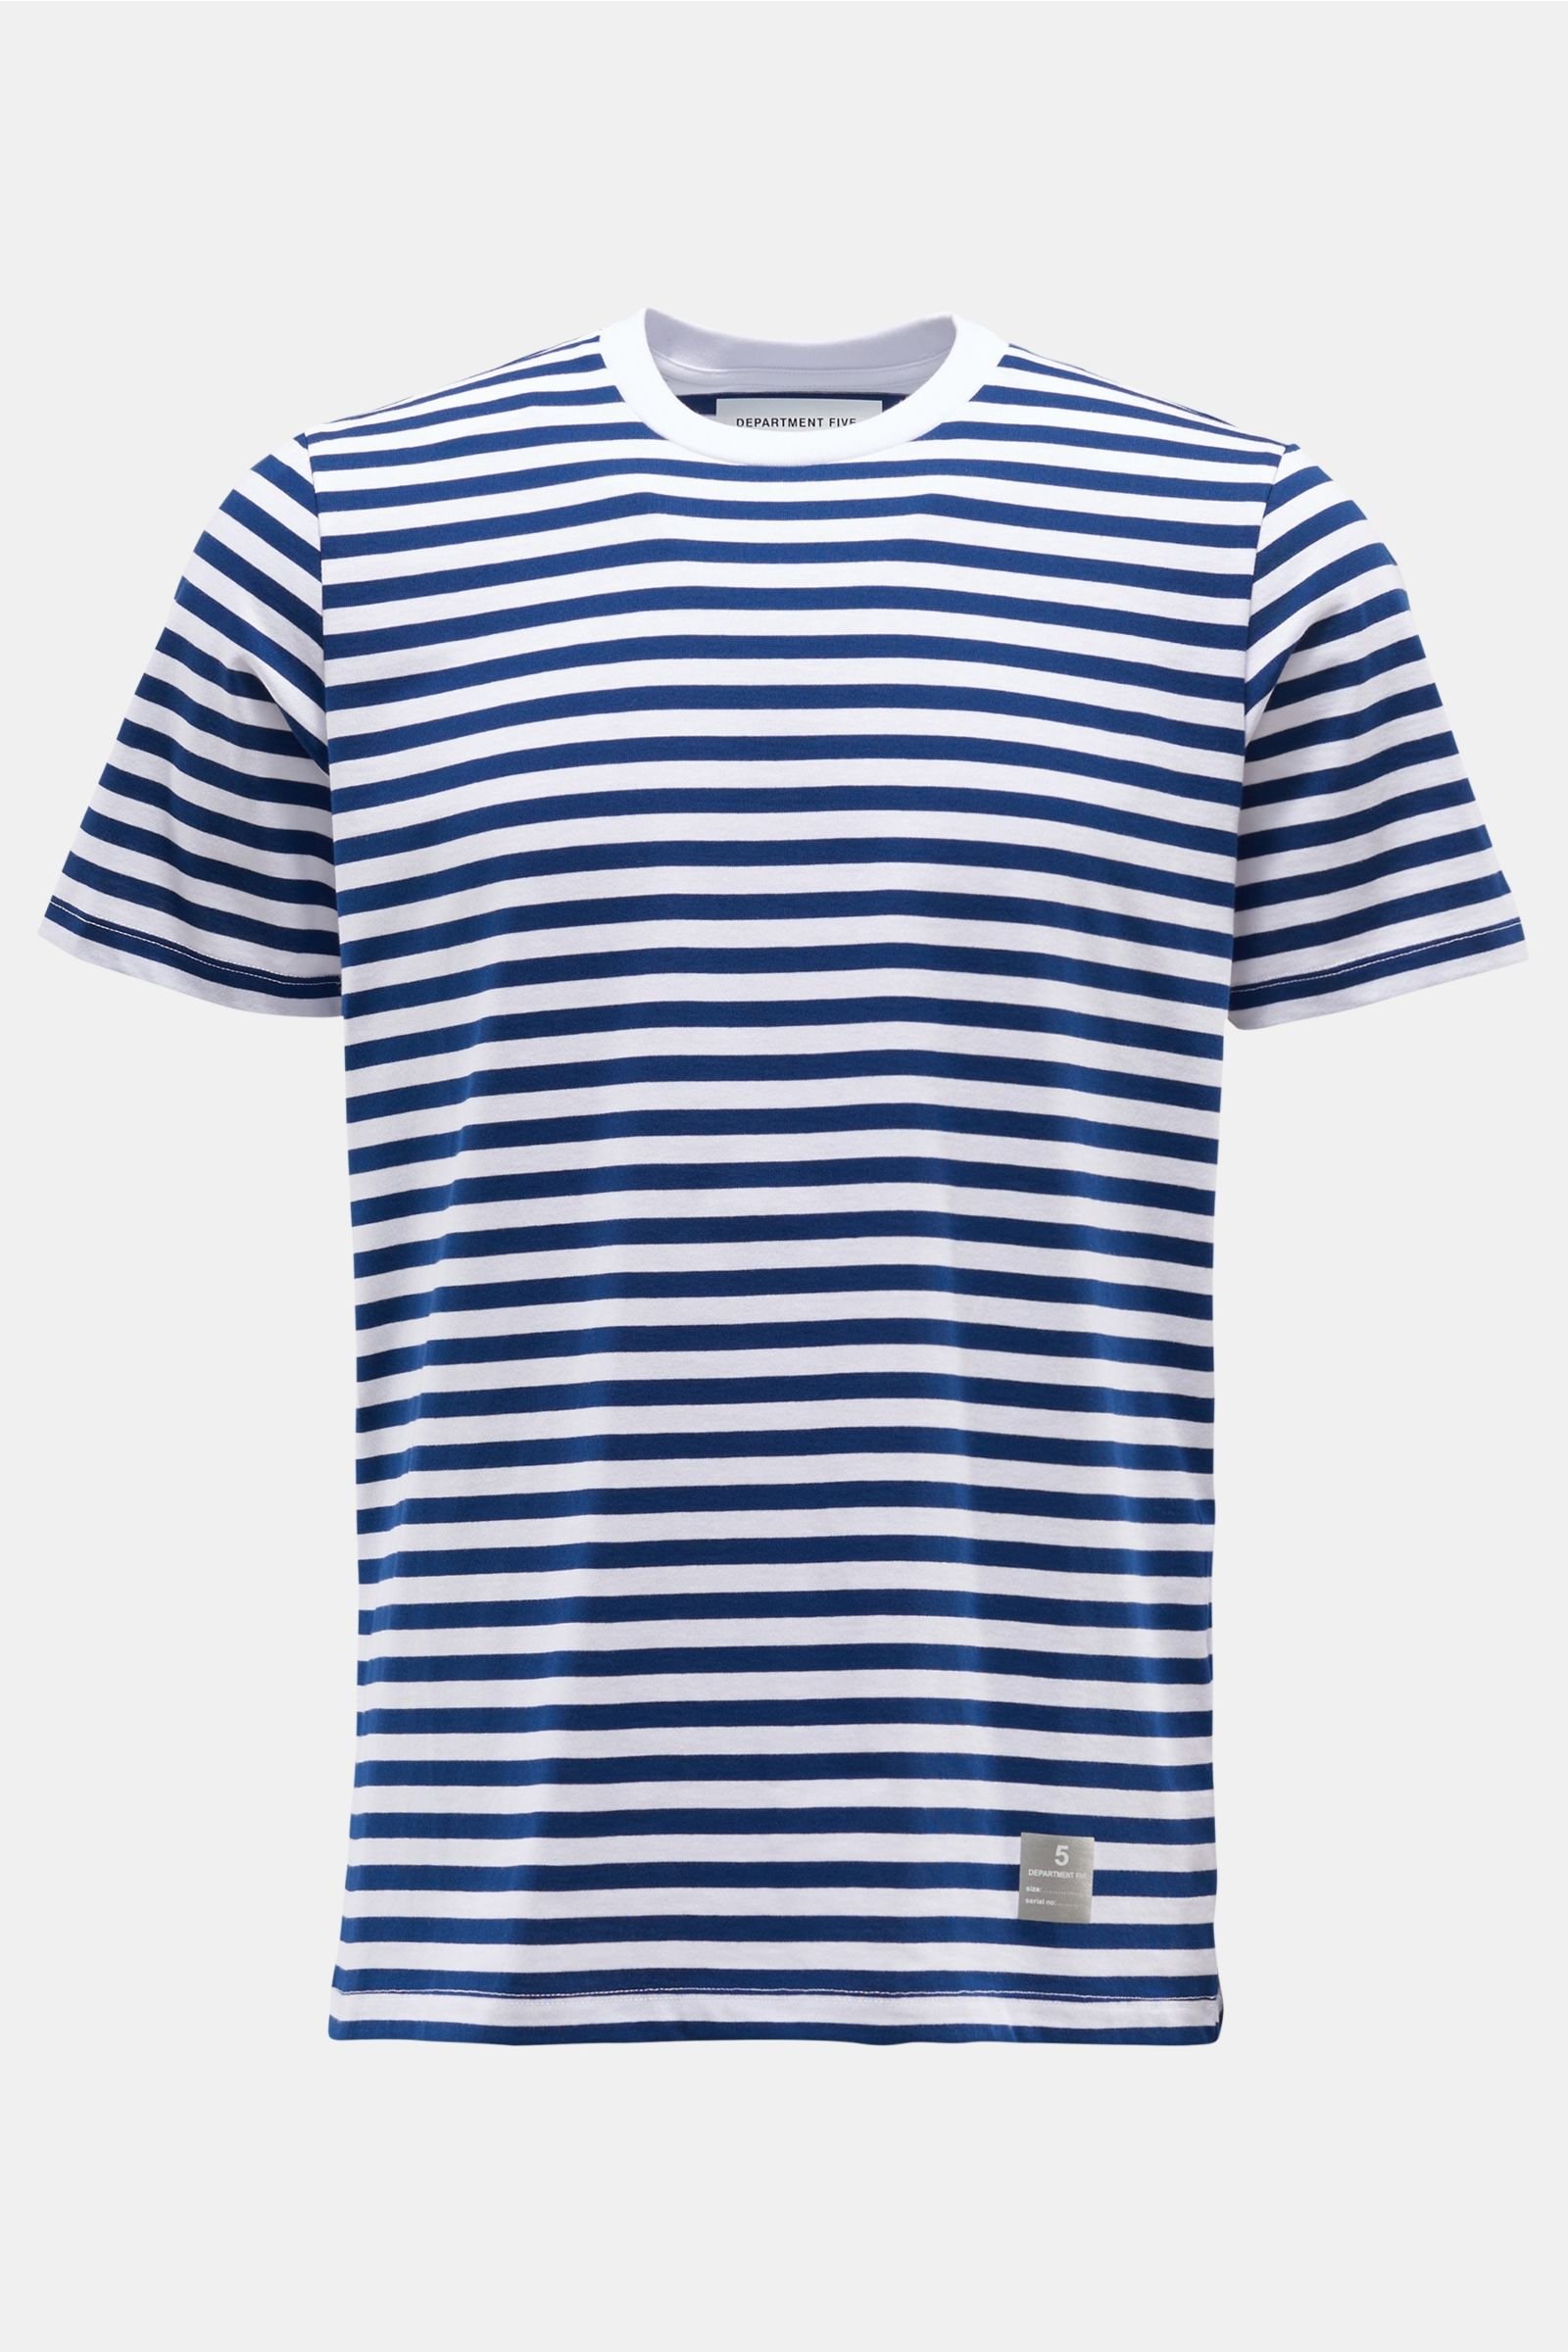 Crew neck T-shirt 'Garski' navy/white striped